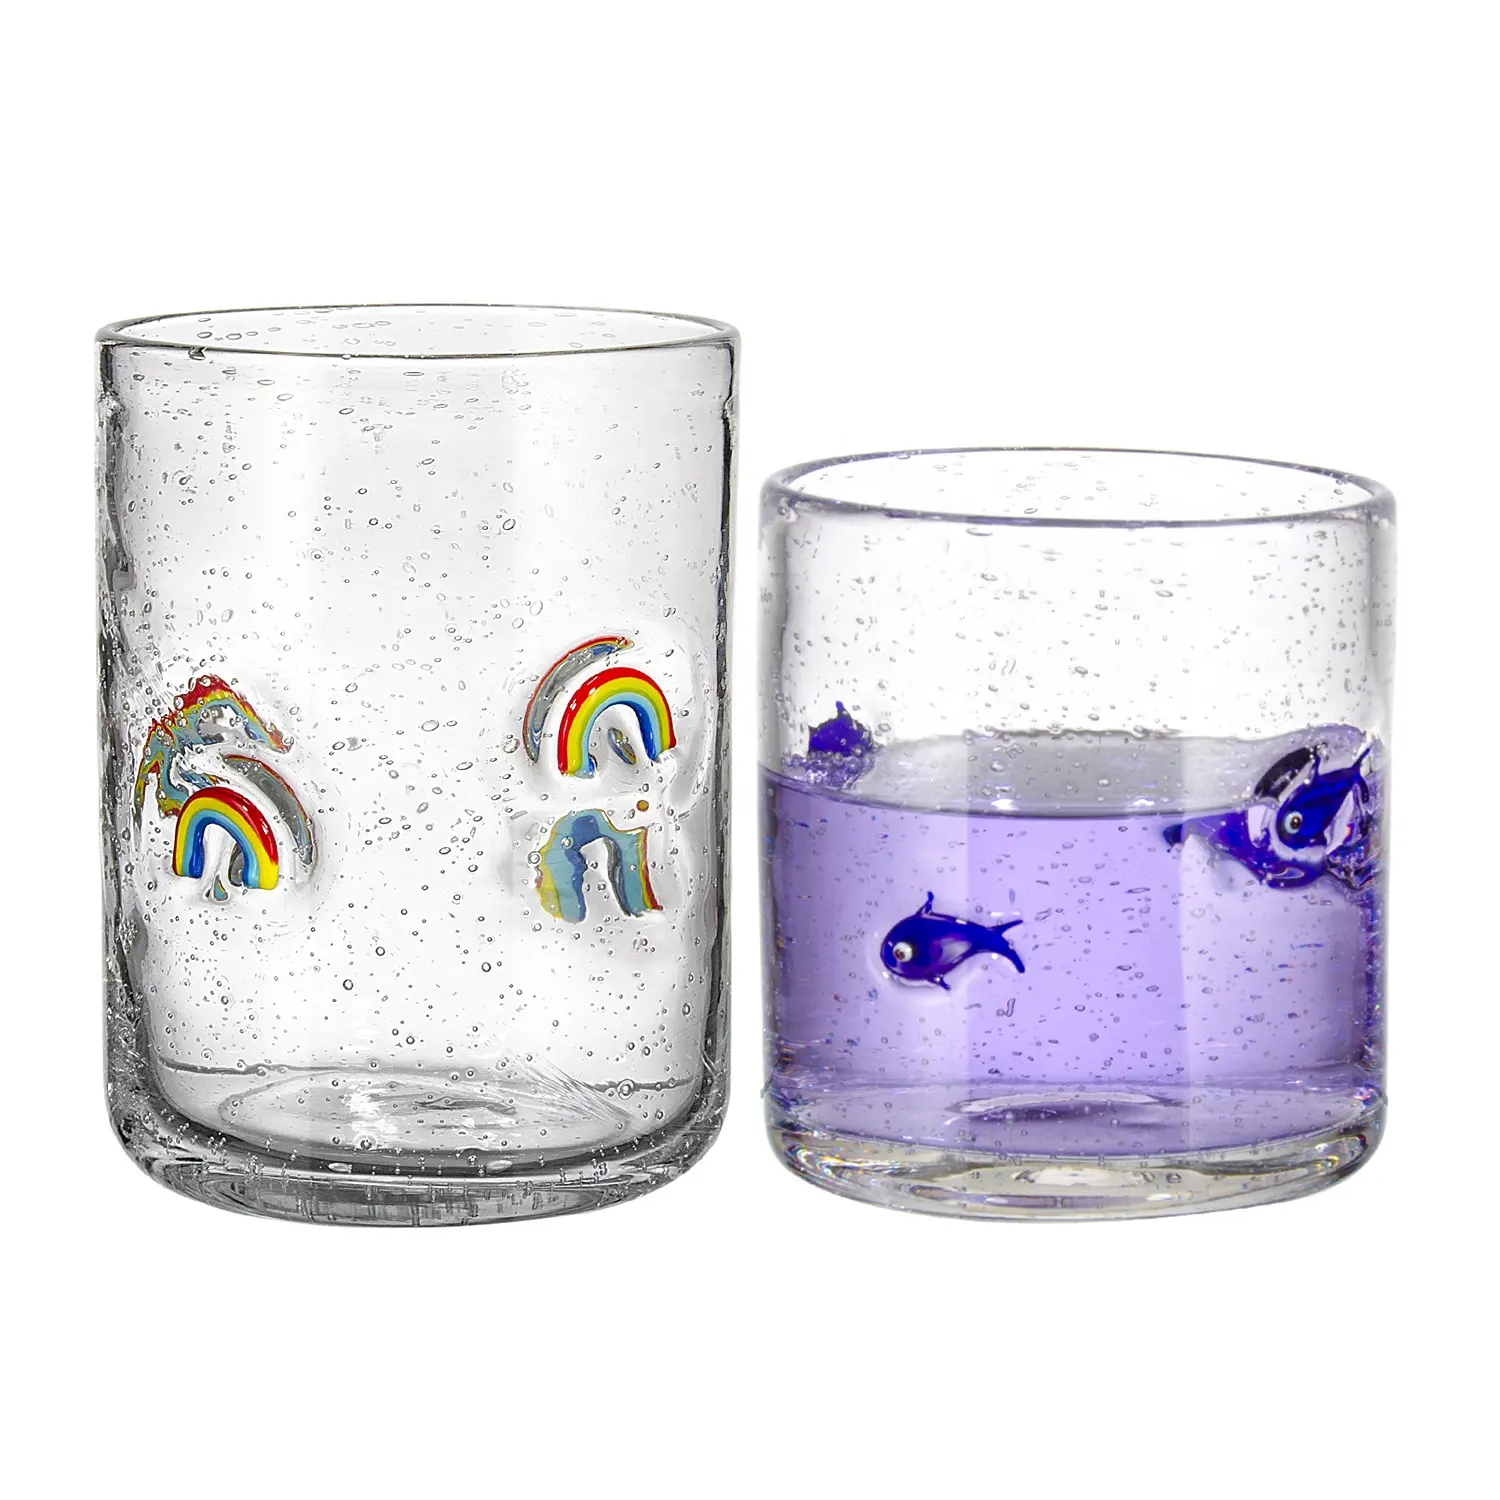 ถ้วยแก้วใส่น้ำทรงสูงทำจากโซดาน้ำผลไม้ทาสีด้วยมือแก้วแบบสร้างสรรค์ออกแบบได้ตามต้องการ